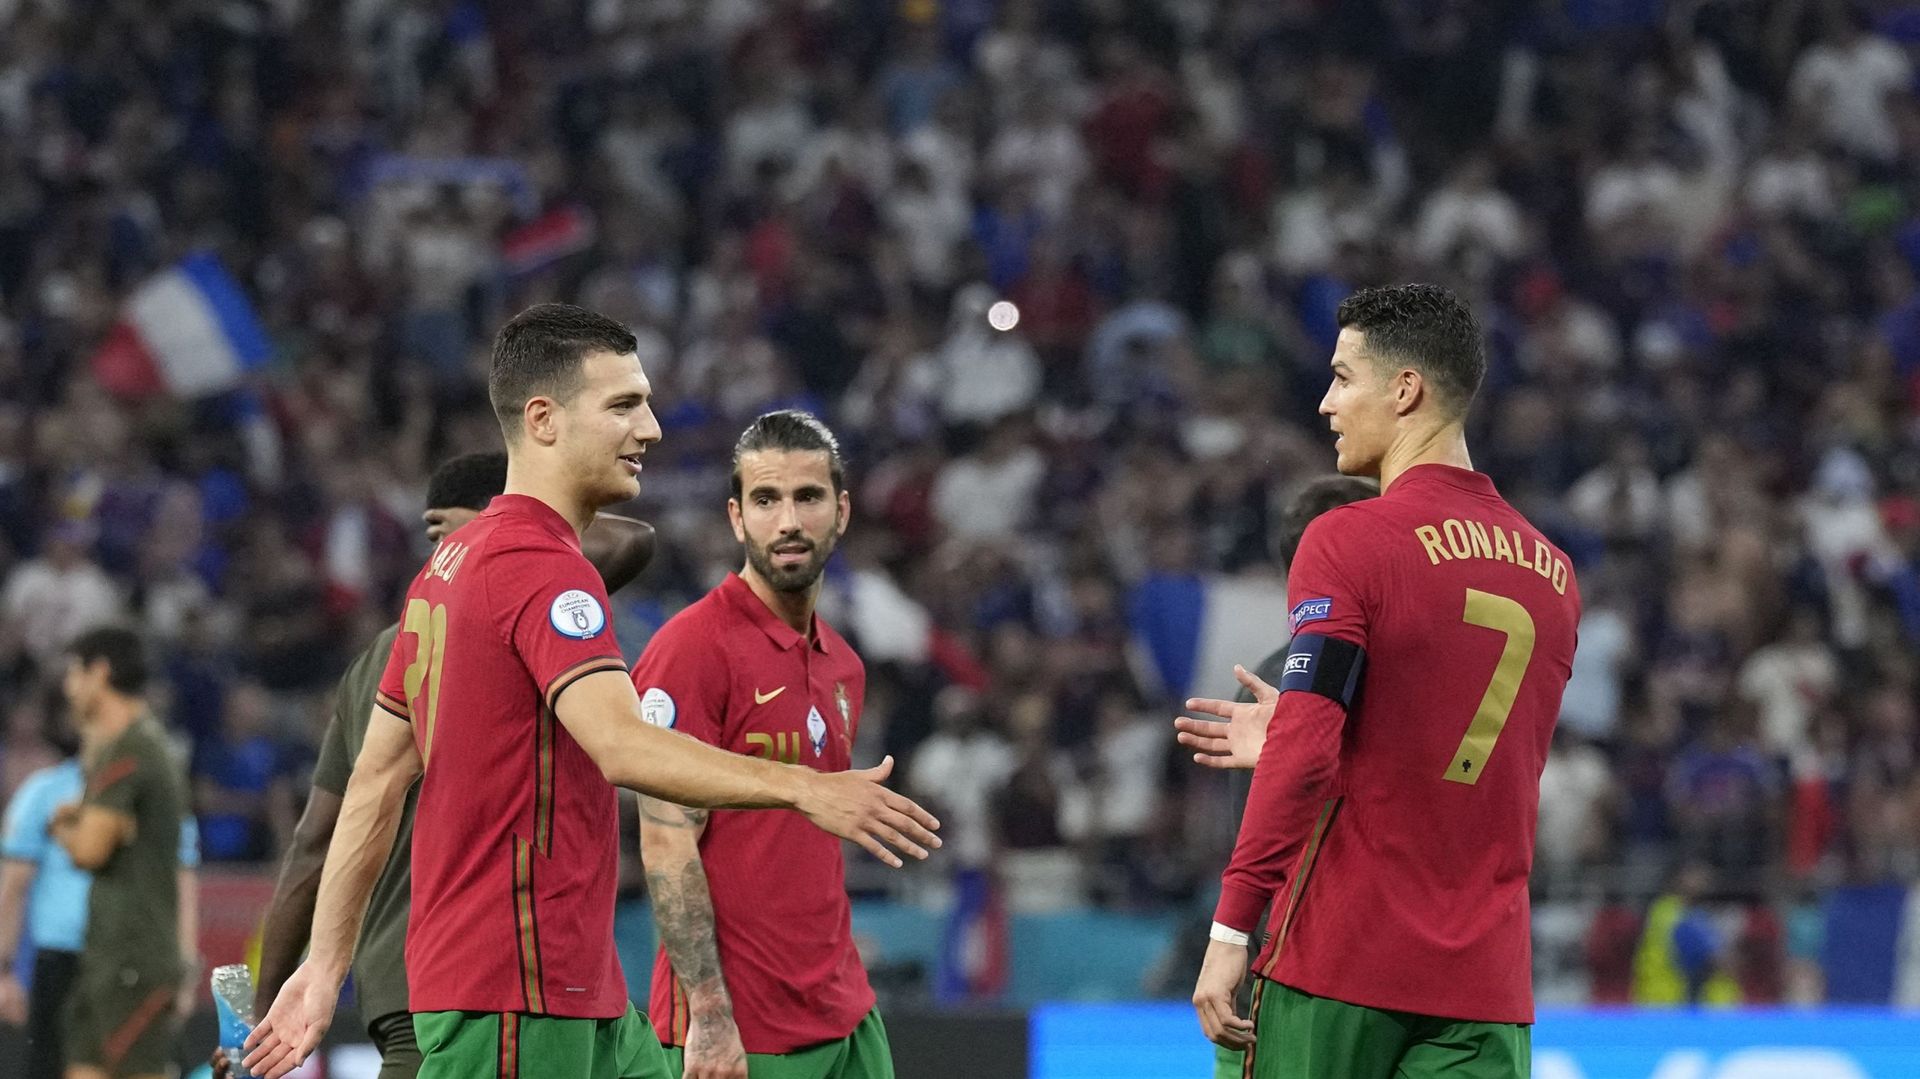 La Belgique et le Portugal s’affrontent ce dimanche soir à Séville pour une place en quarts de finale de l’Euro 2020. Ce sera le 19e duel entre les deux nations, le premier dans une phase finale d’une grande compétition. Les Diables Rouges n’ont plus batt